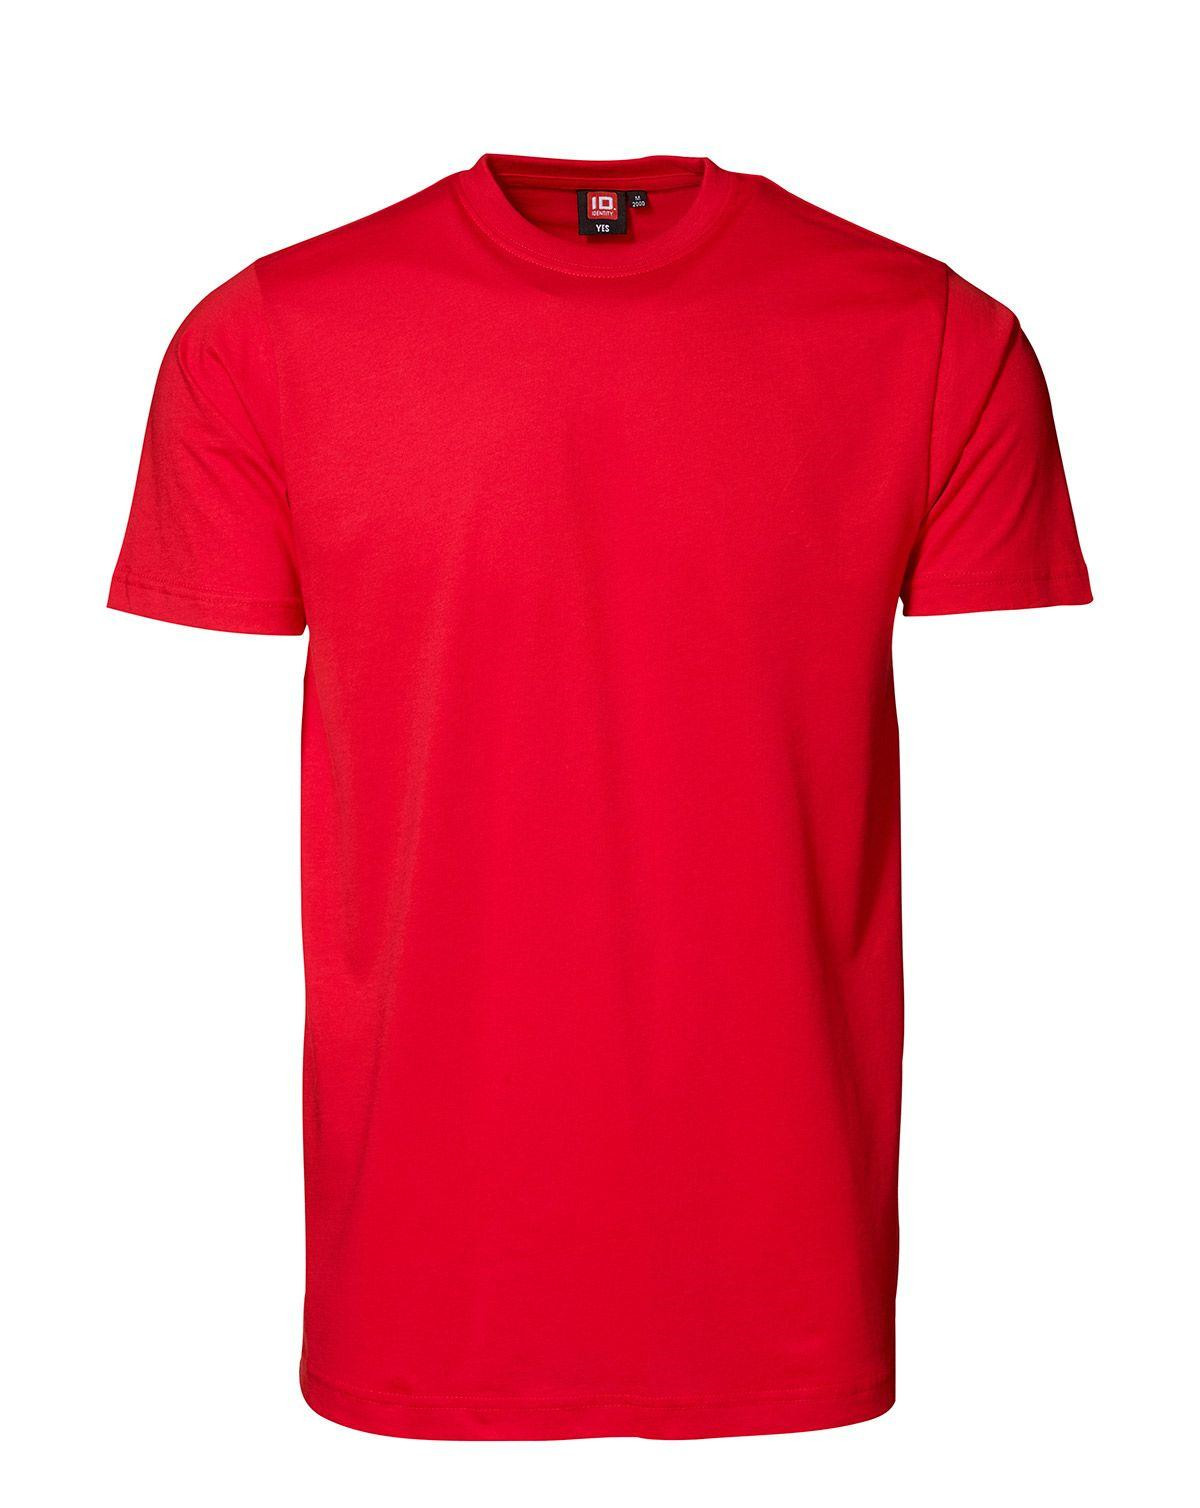 ID YES T-shirt (Rød, 2XL)